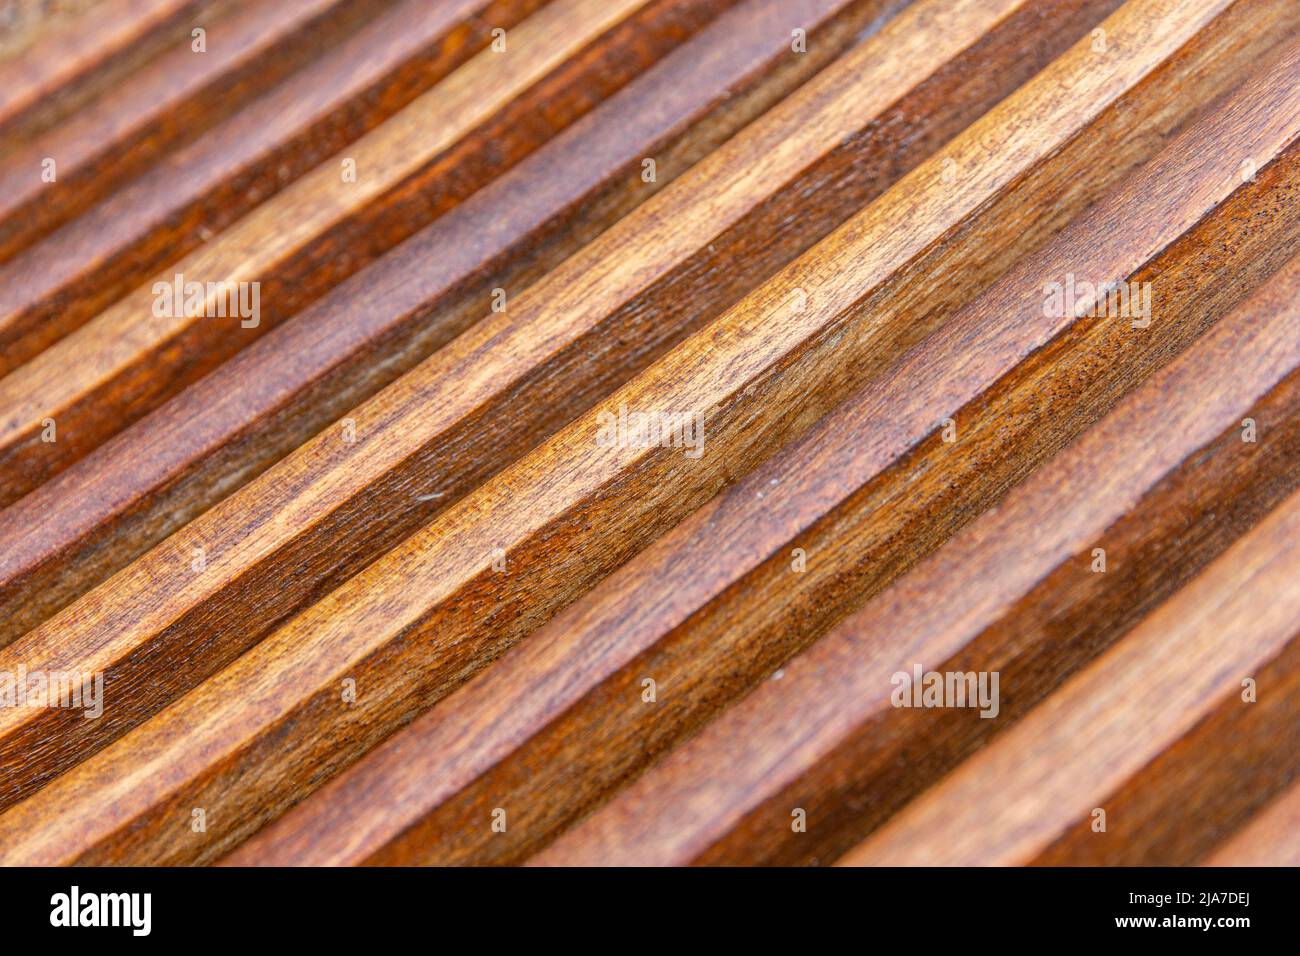 tung oil on hardwood garden chair Stock Photo